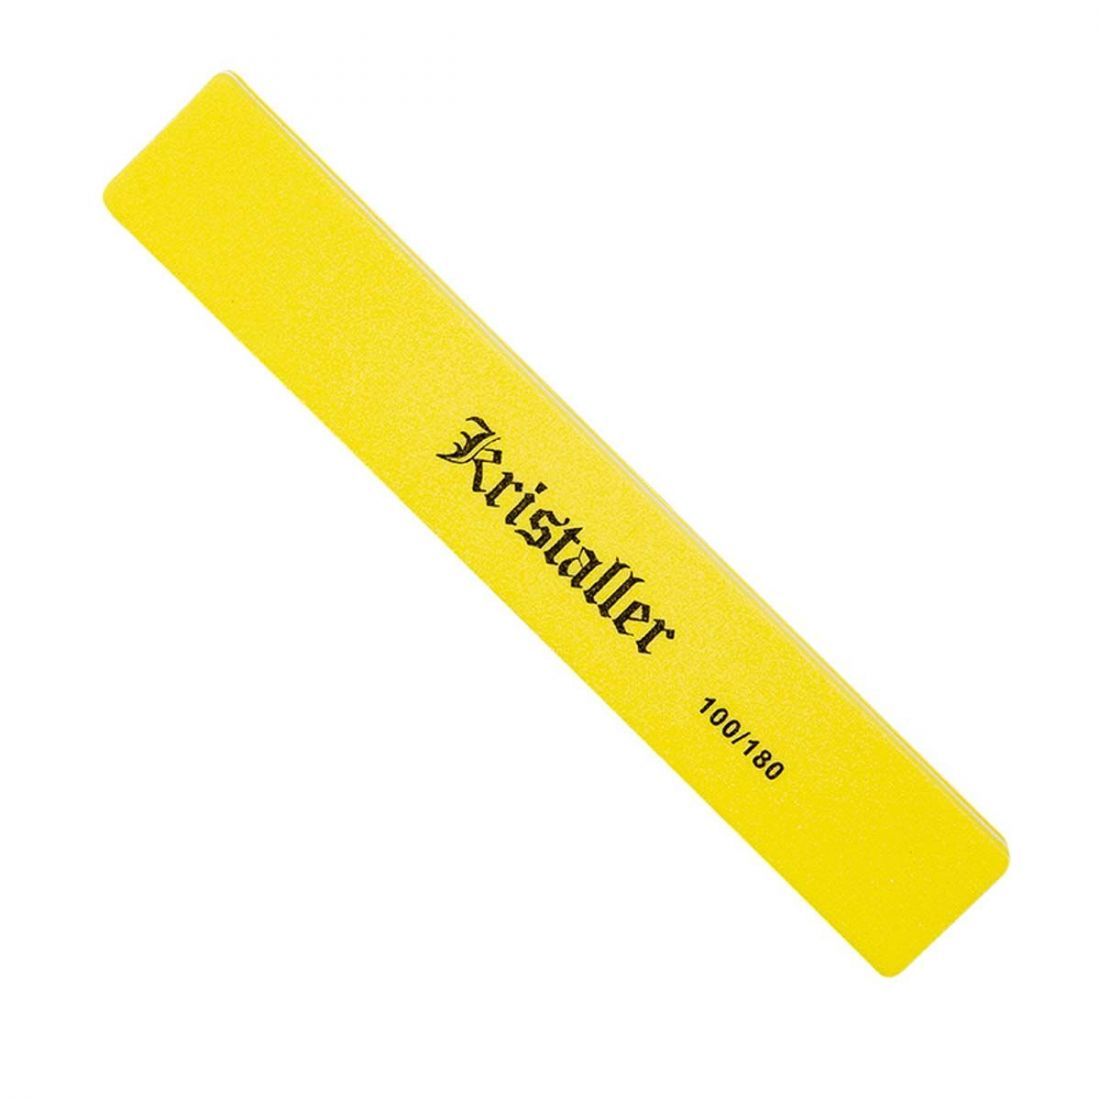 Kristaller шлифовщик для ногтей прямой 100/180 грит, желтый, арт.1202